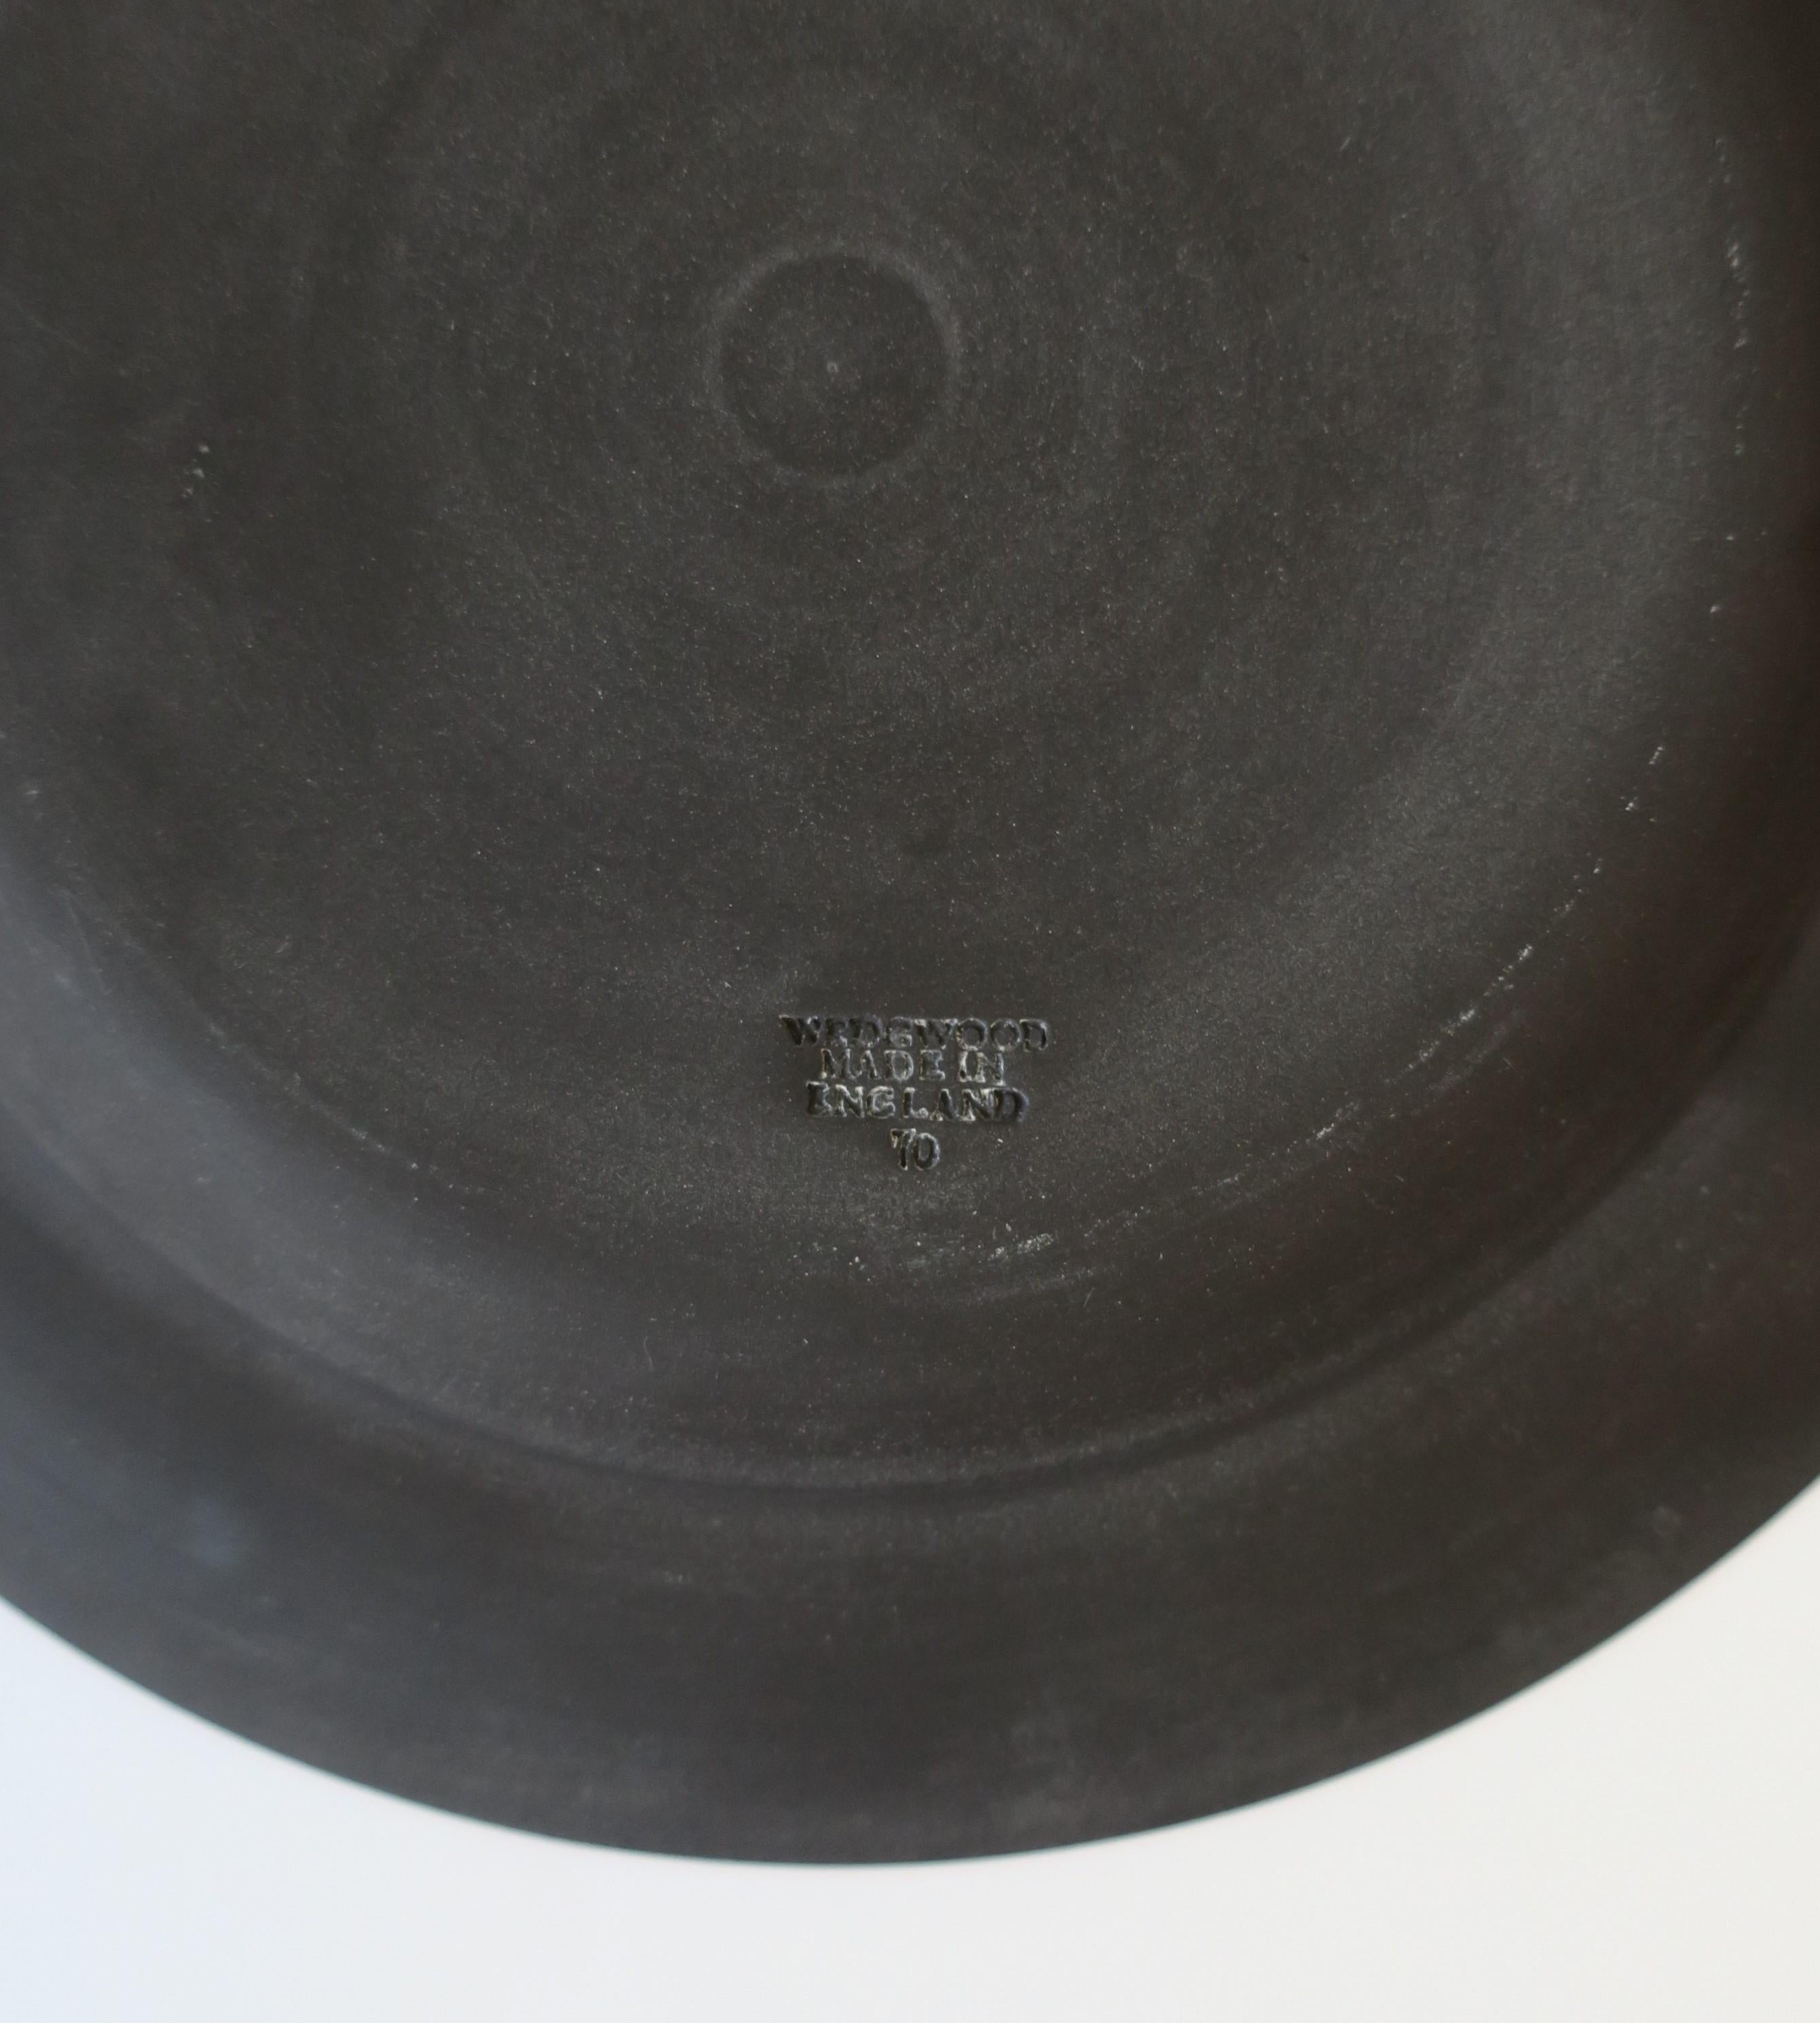 Stoneware Wedgwood English Matte Black Basalt Plates, Set of 4